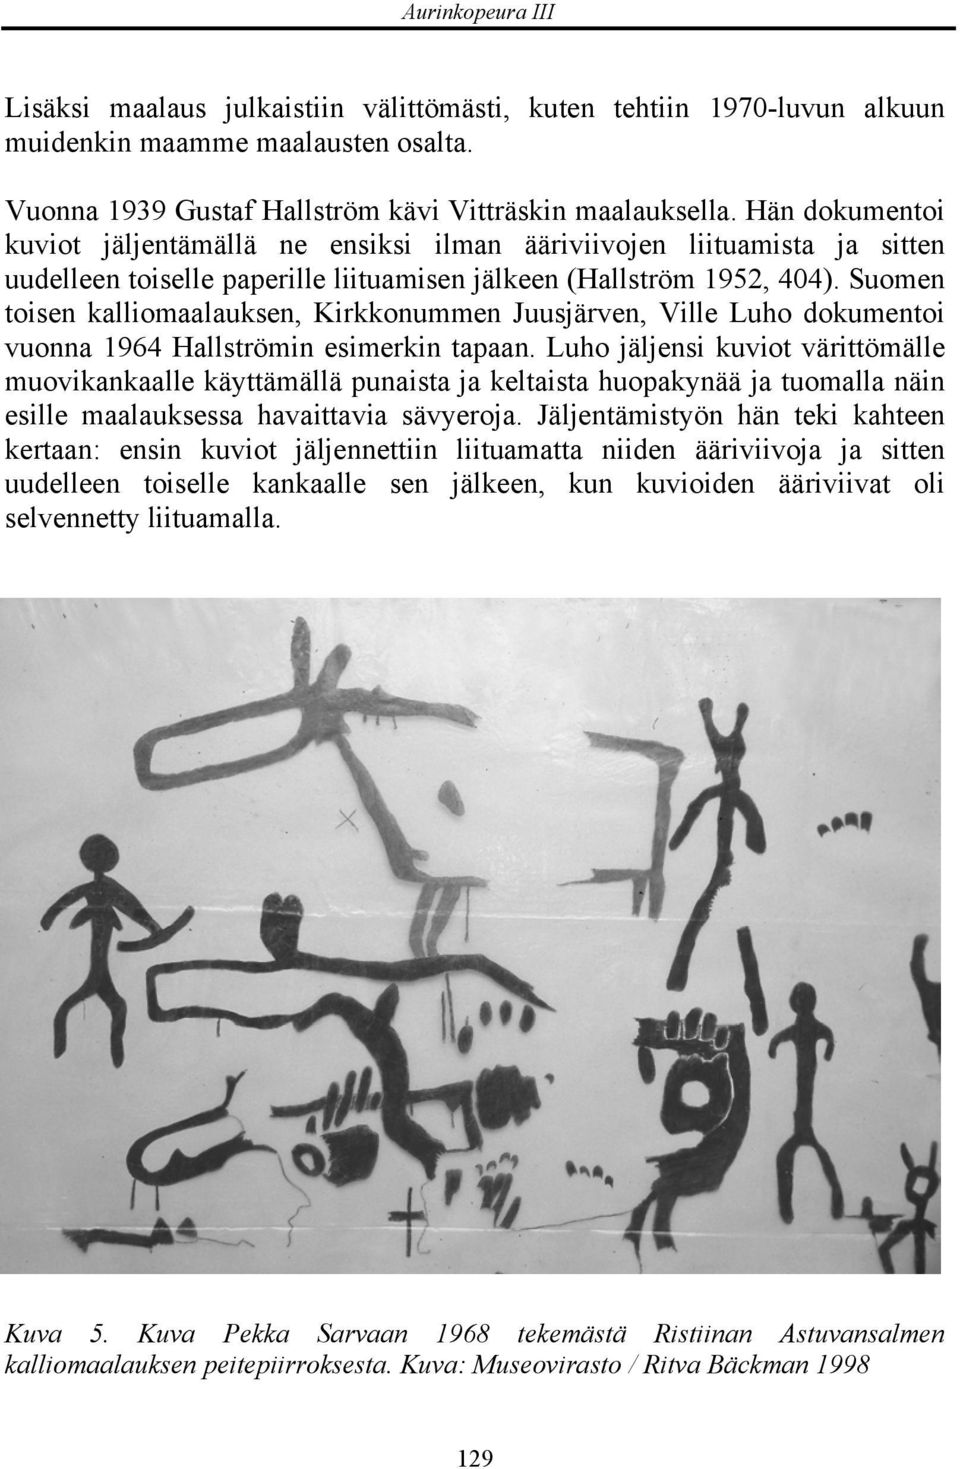 Suomen toisen kalliomaalauksen, Kirkkonummen Juusjärven, Ville Luho dokumentoi vuonna 1964 Hallströmin esimerkin tapaan.